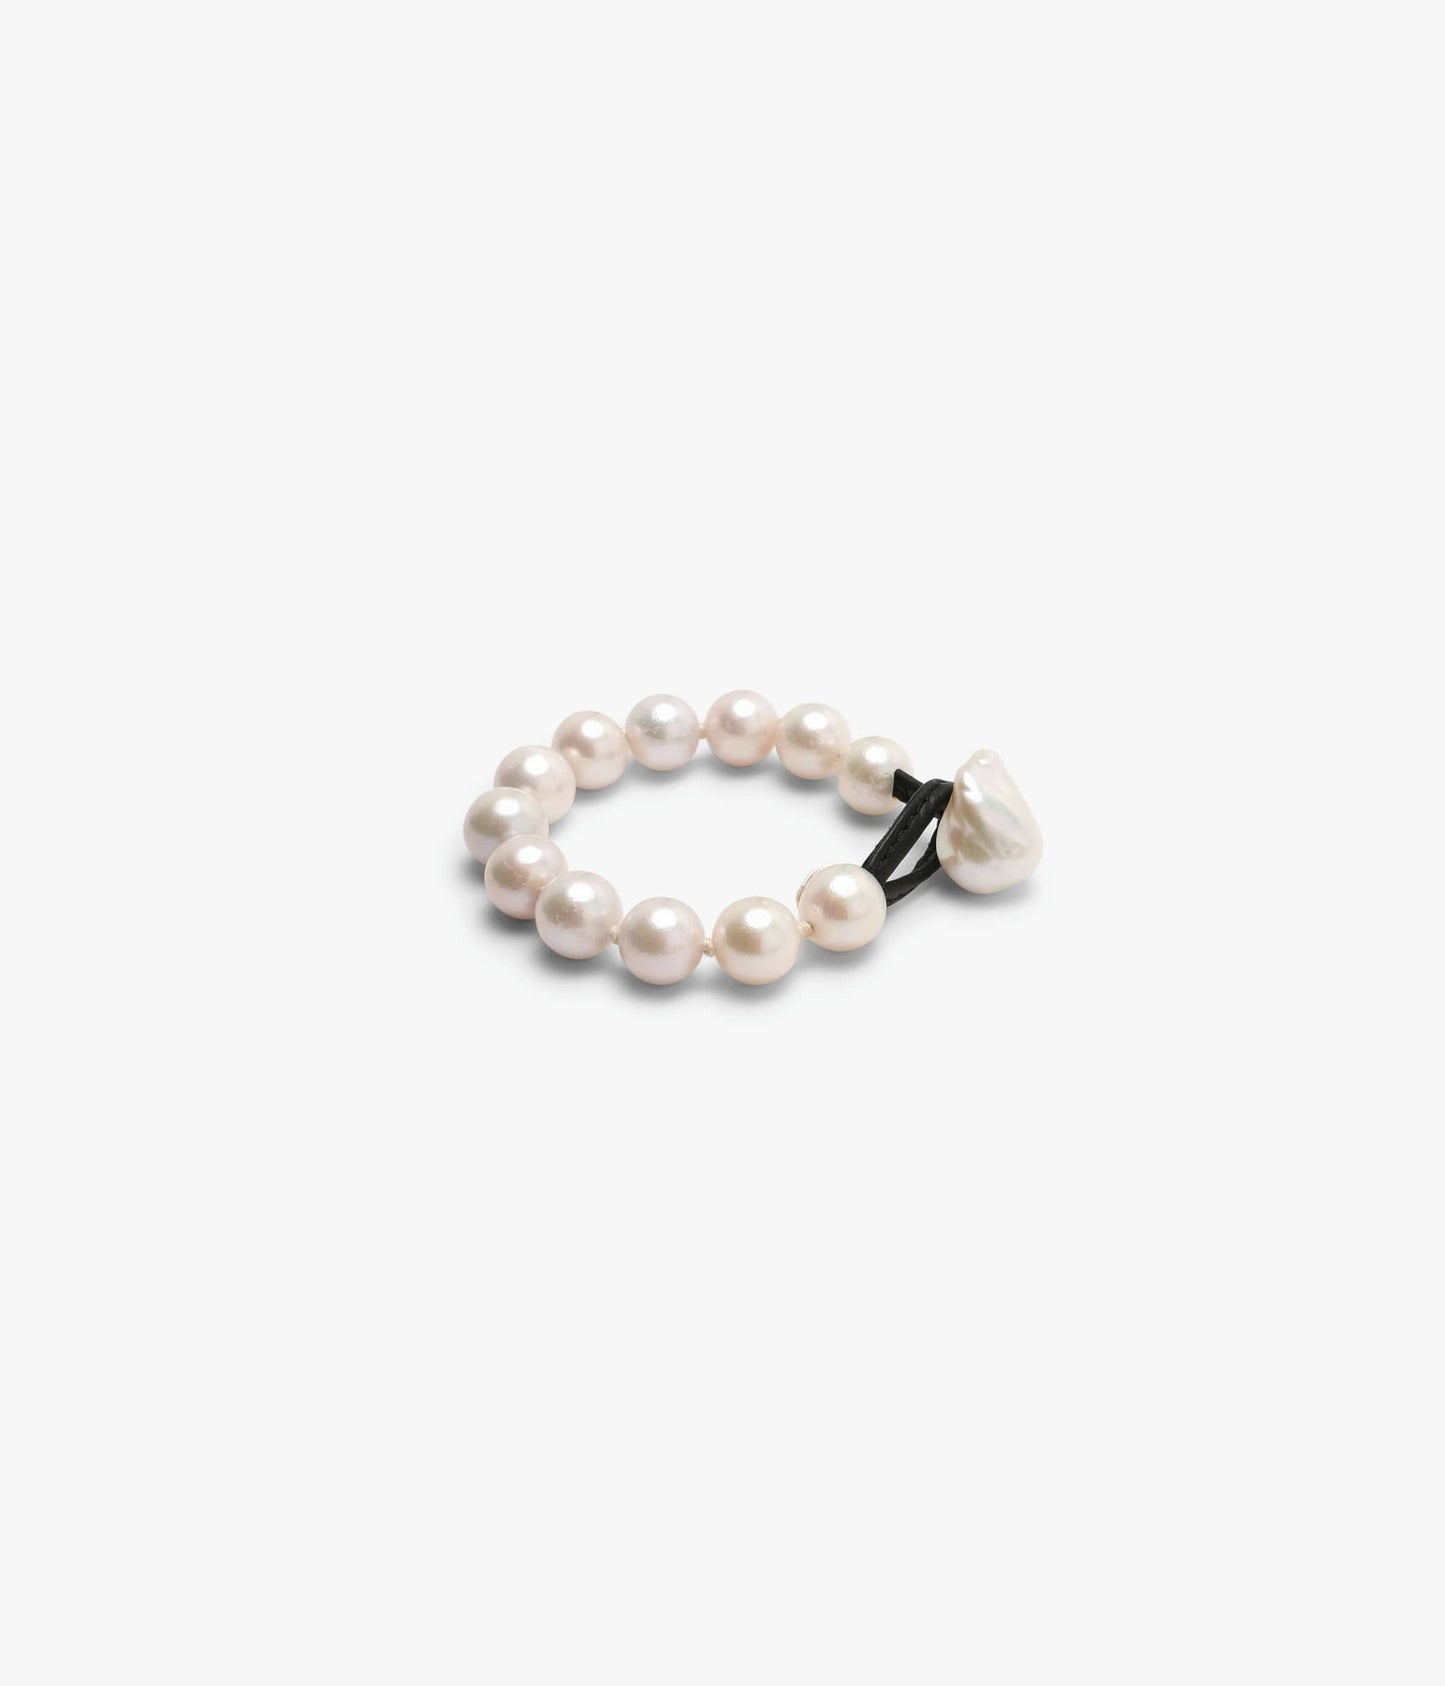 Mint bracelet: freshwater pearls